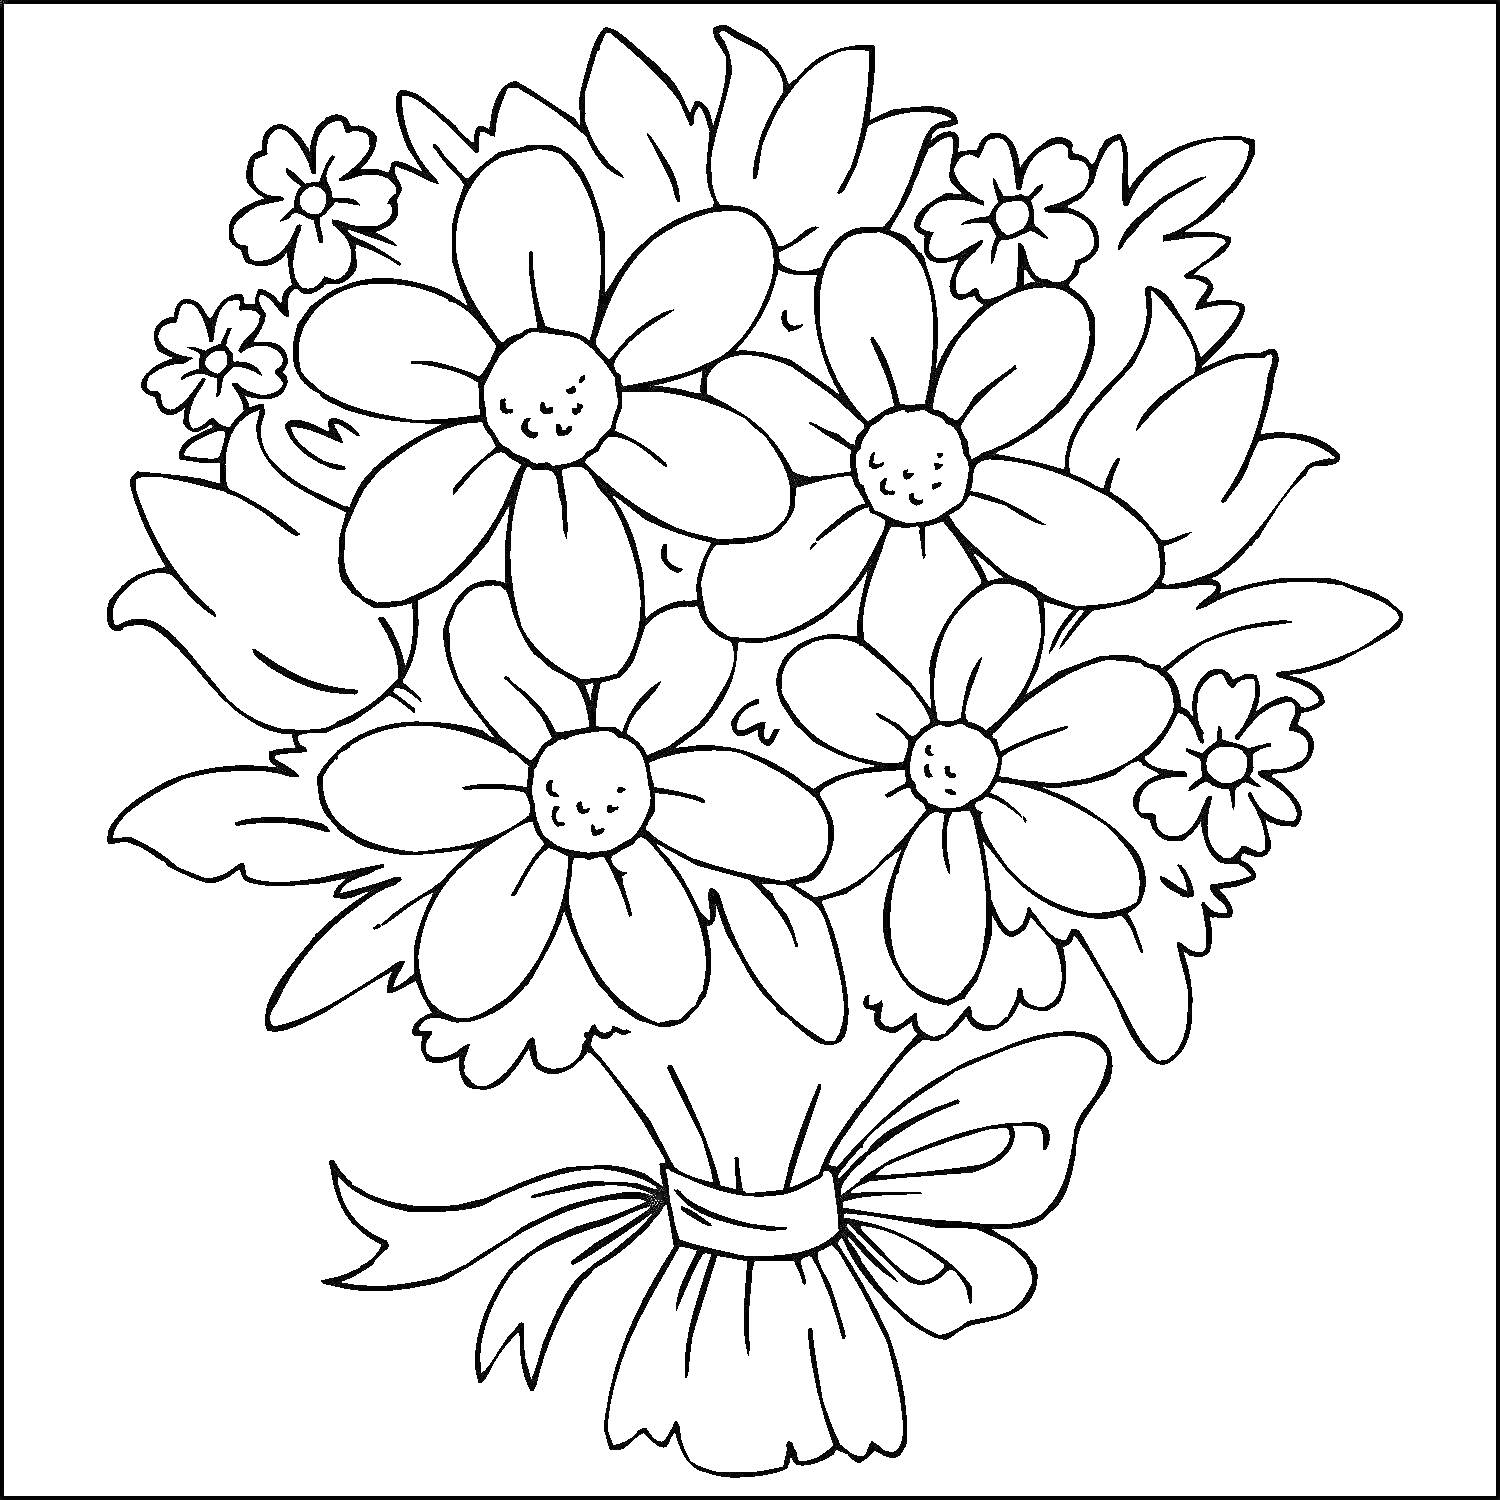 Раскраска Букет с крупными цветами, мелкими цветочками и листьями, перевязанный бантом